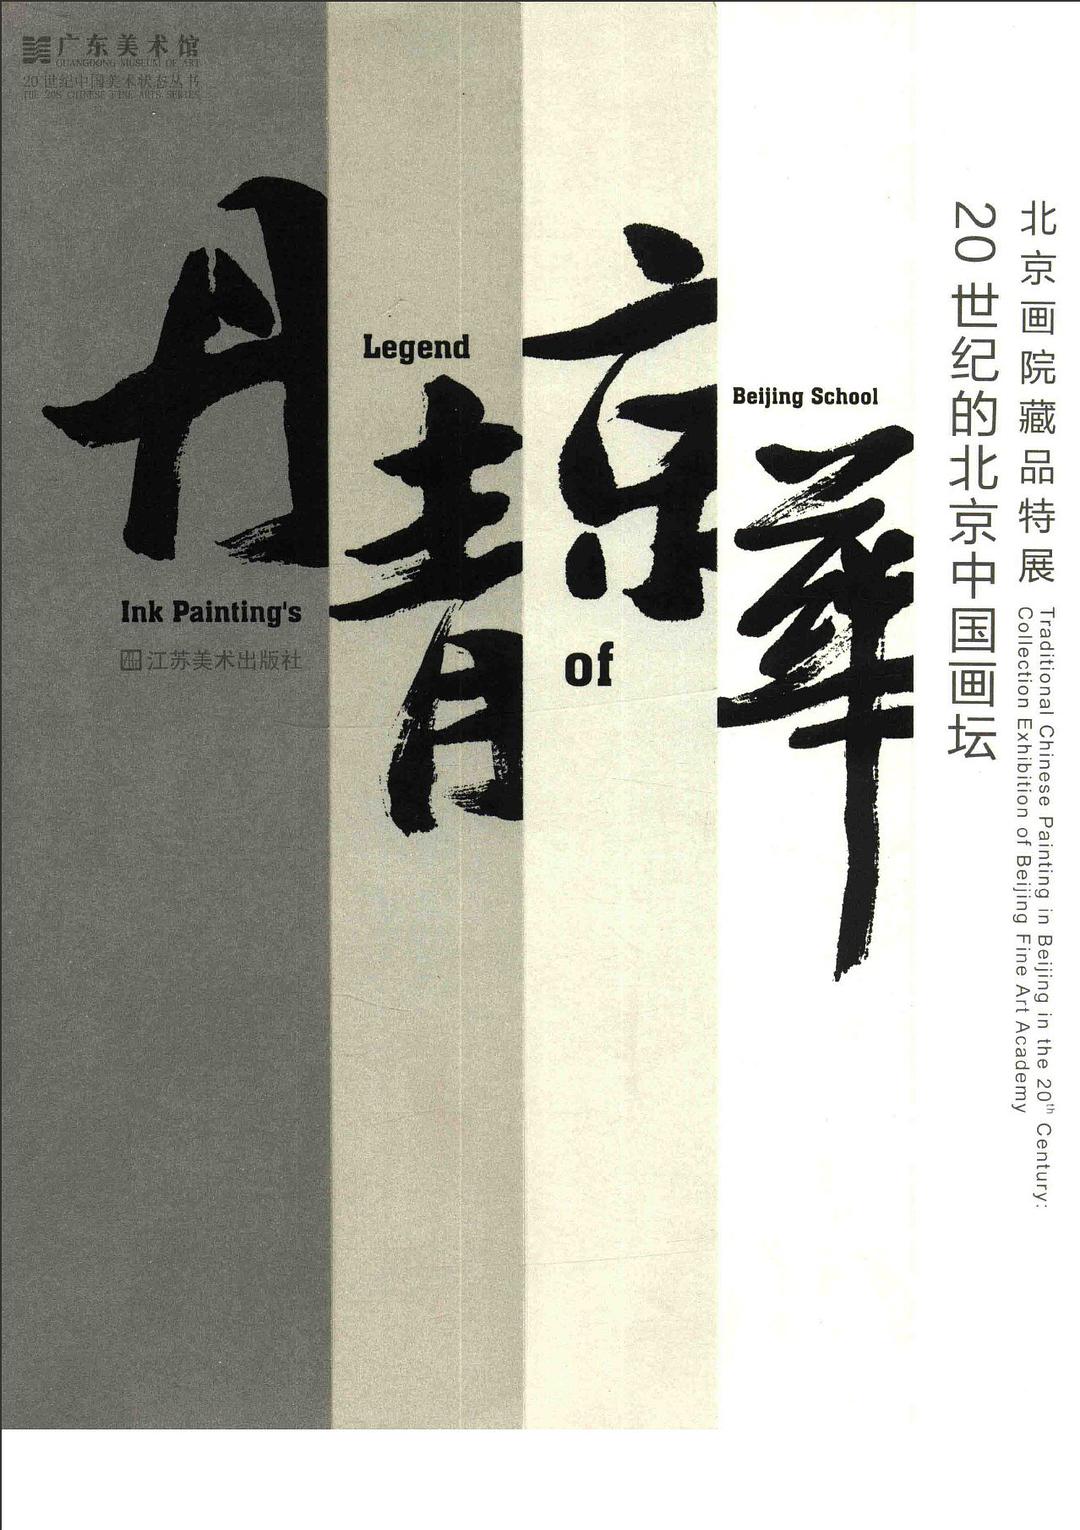 丹青京华 北京画院藏品特展 20世纪的北京中国画坛 collection exhibition of Beijing Fine Art Academy traditional Chinese painting in Beijing in the 20th century